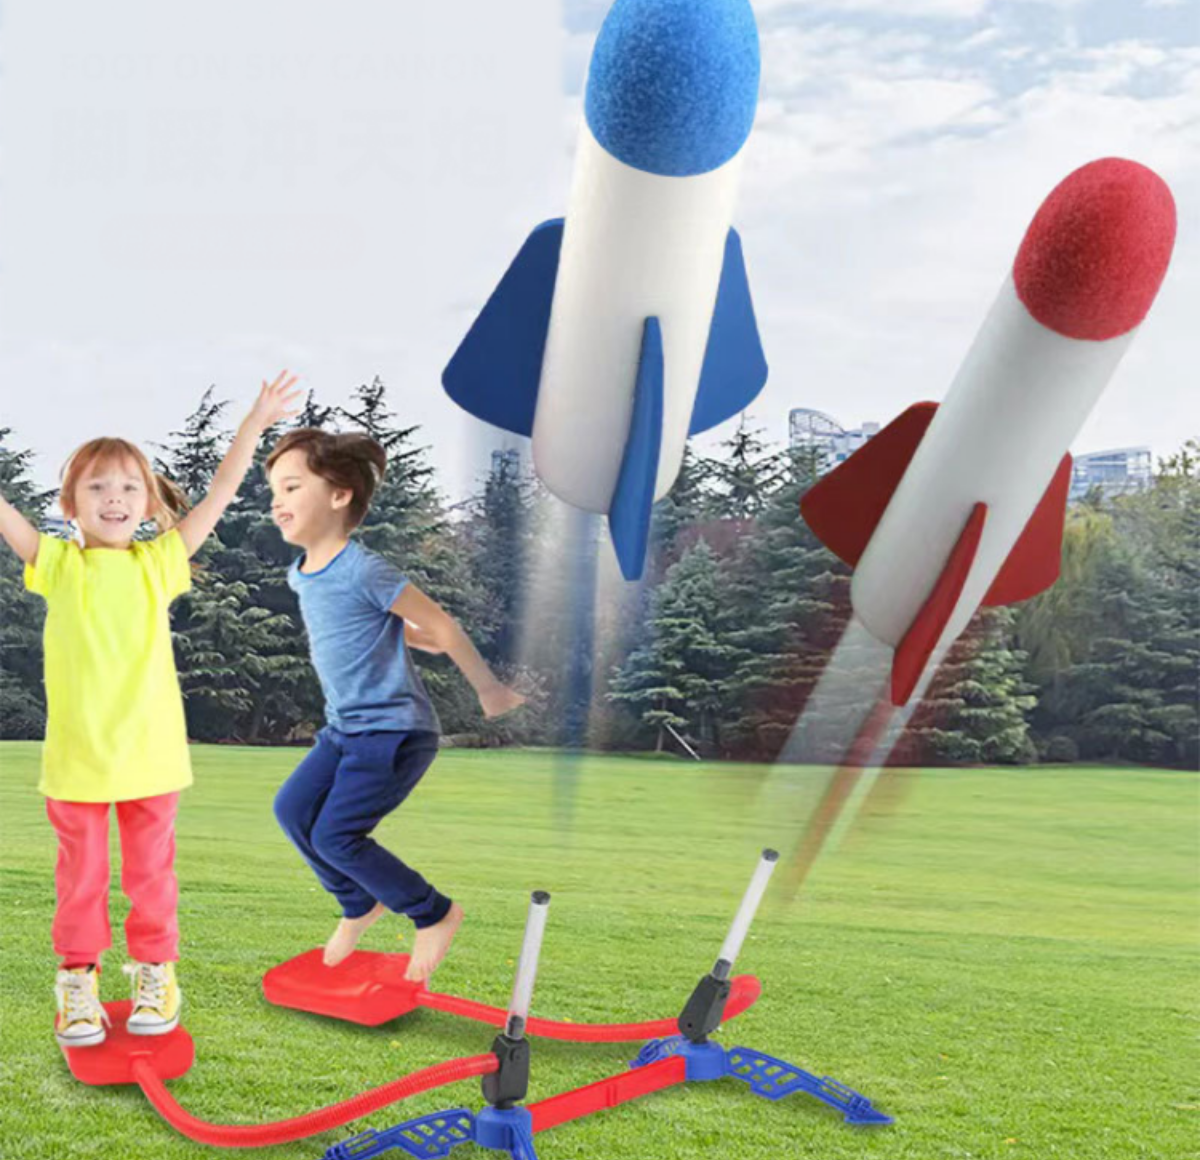 LED付き超楽しい空気力発射装置&ロケット｜アウトドア庭ゲームおもちゃ 遊びながら運動を促進することができる！